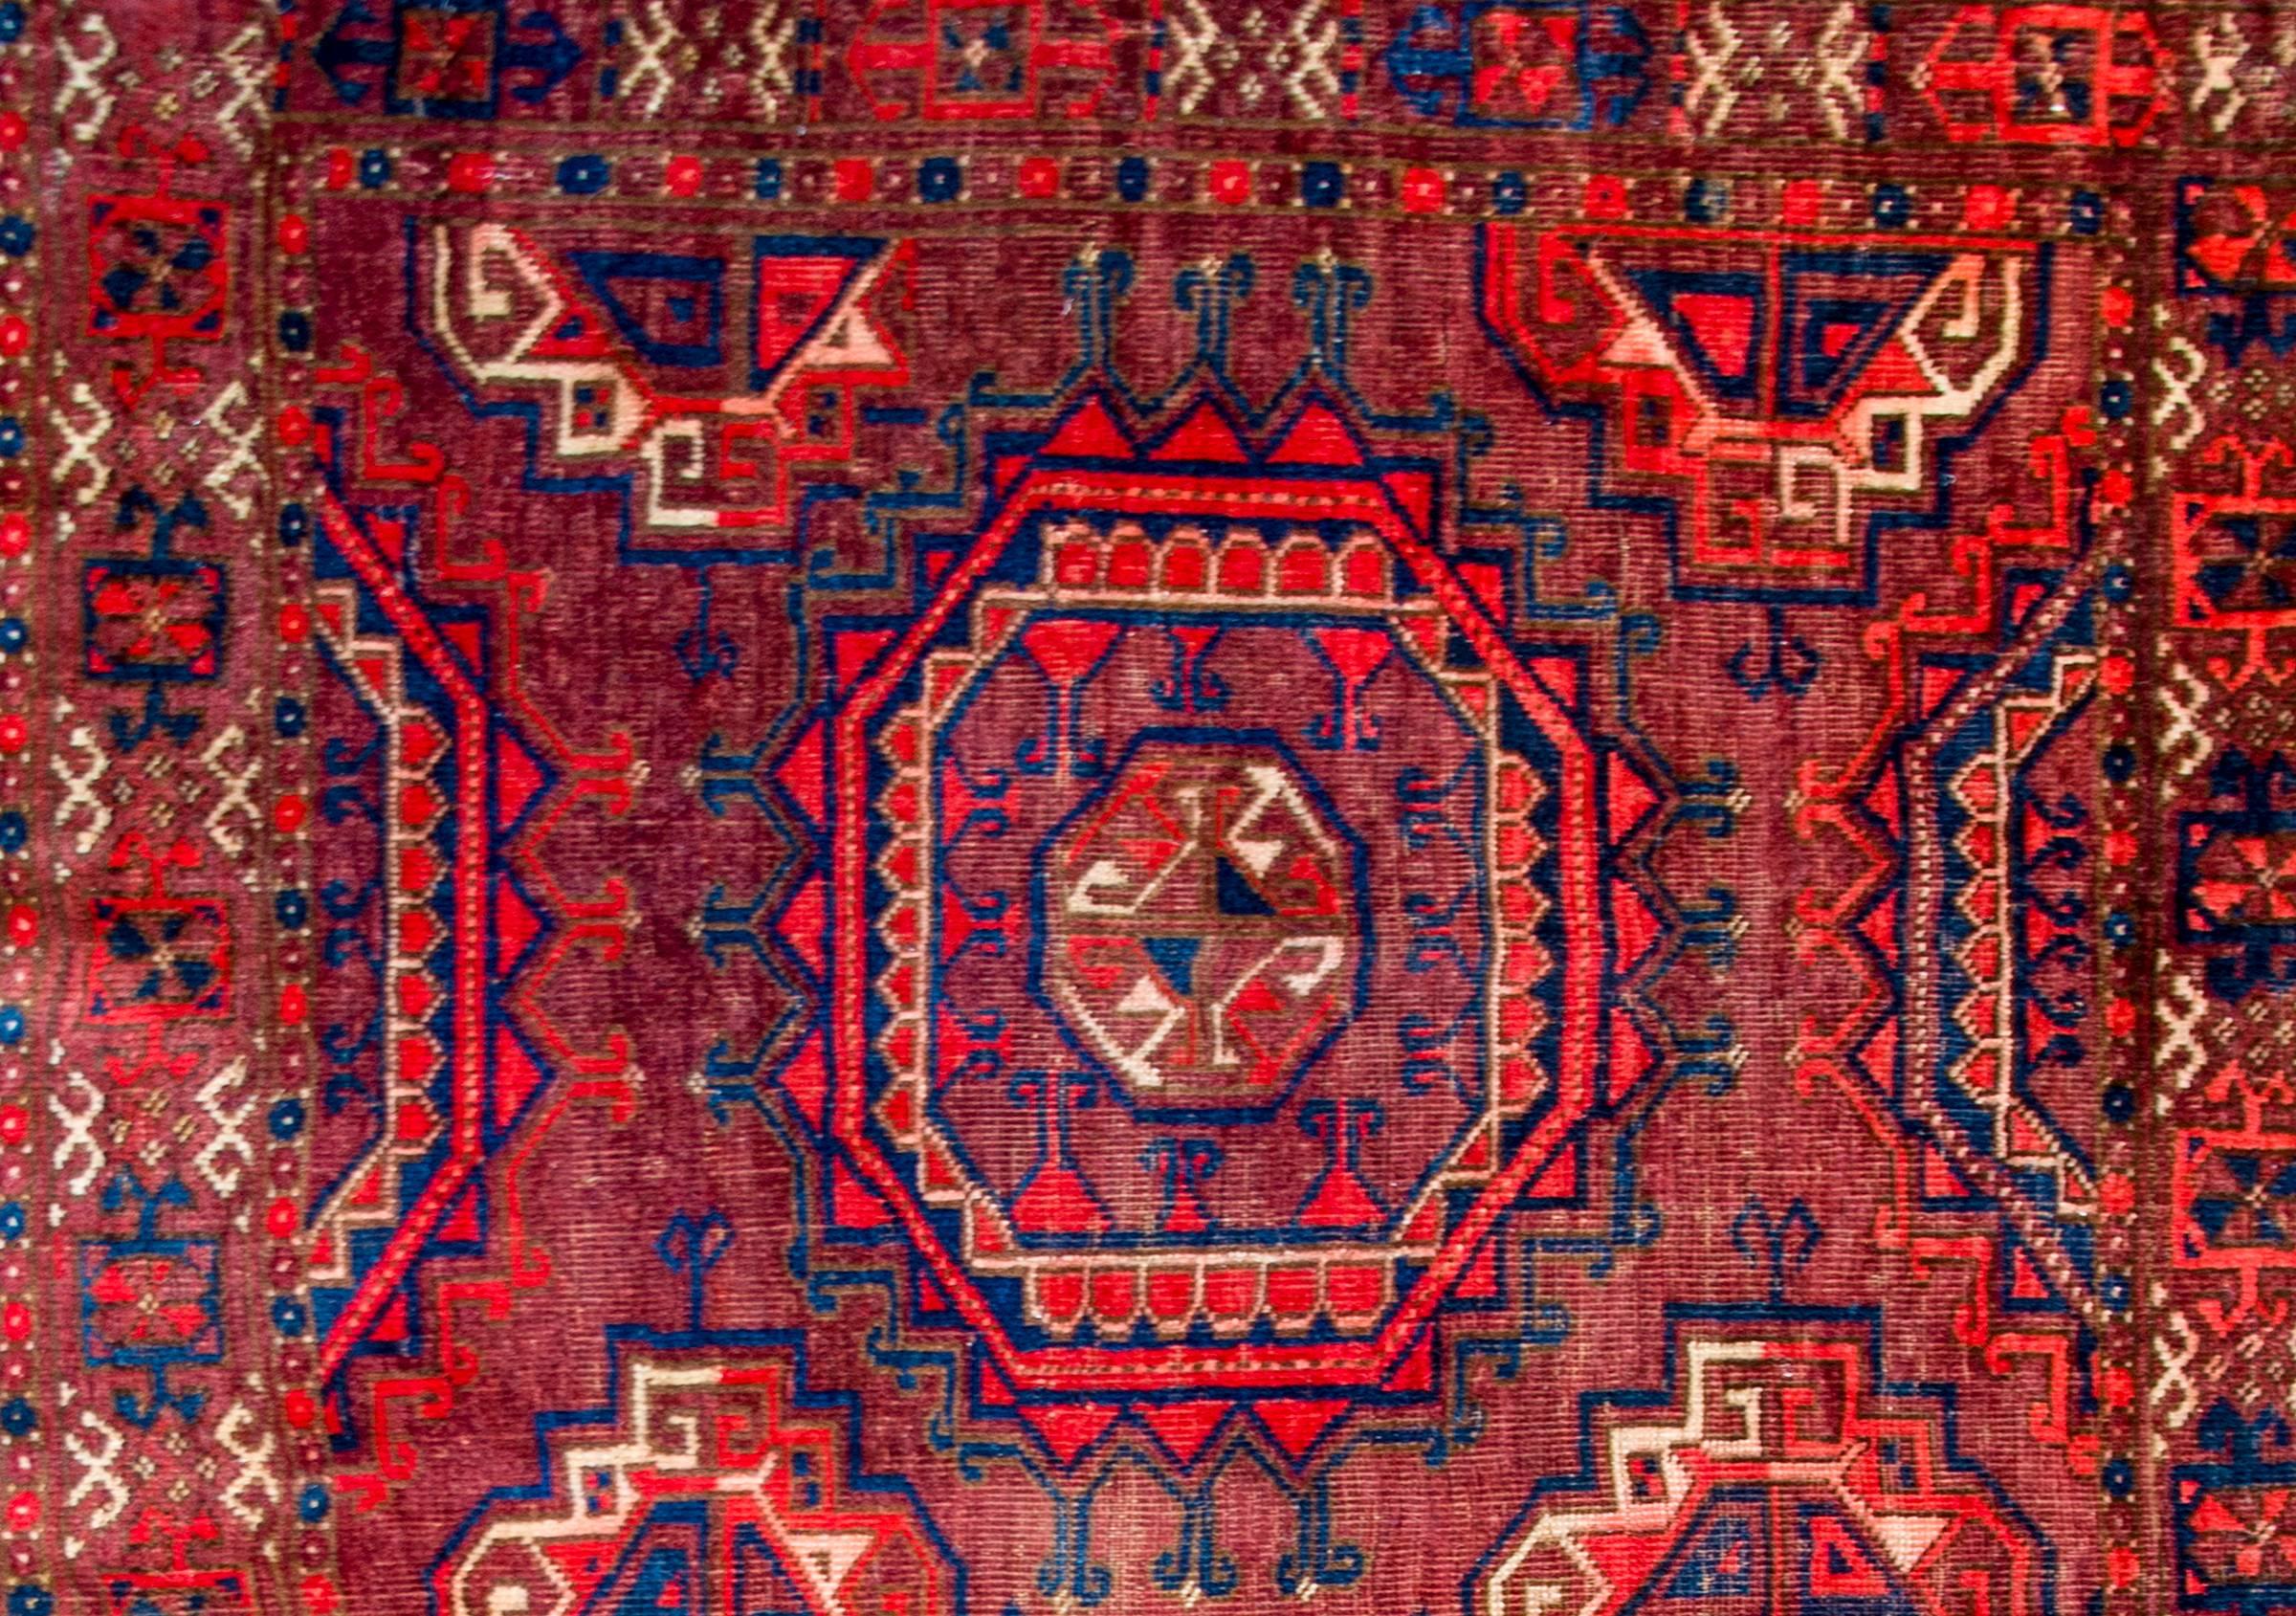 Sac Juval Turkmène du début du 20ème siècle avec un beau motif contenant deux grands médaillons octogonaux au milieu d'un champ de médaillons octogonaux plus petits, tous tissés en cramoisi, blanc, et indigo clair et foncé, sur un fond cramoisi. La